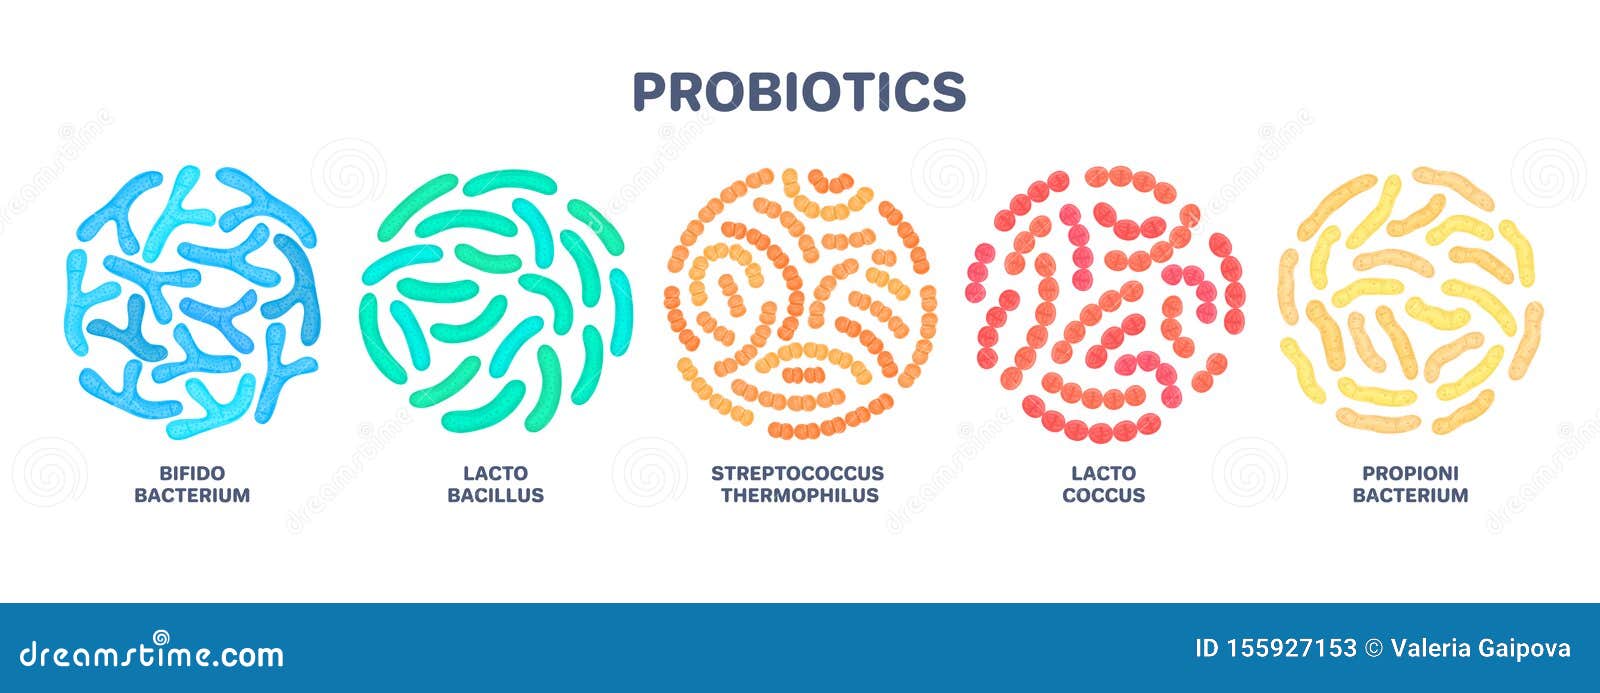 probiotics. lactic acid bacterium. bifidobacterium, lactobacillus, streptococcus thermophilus, lactococcus